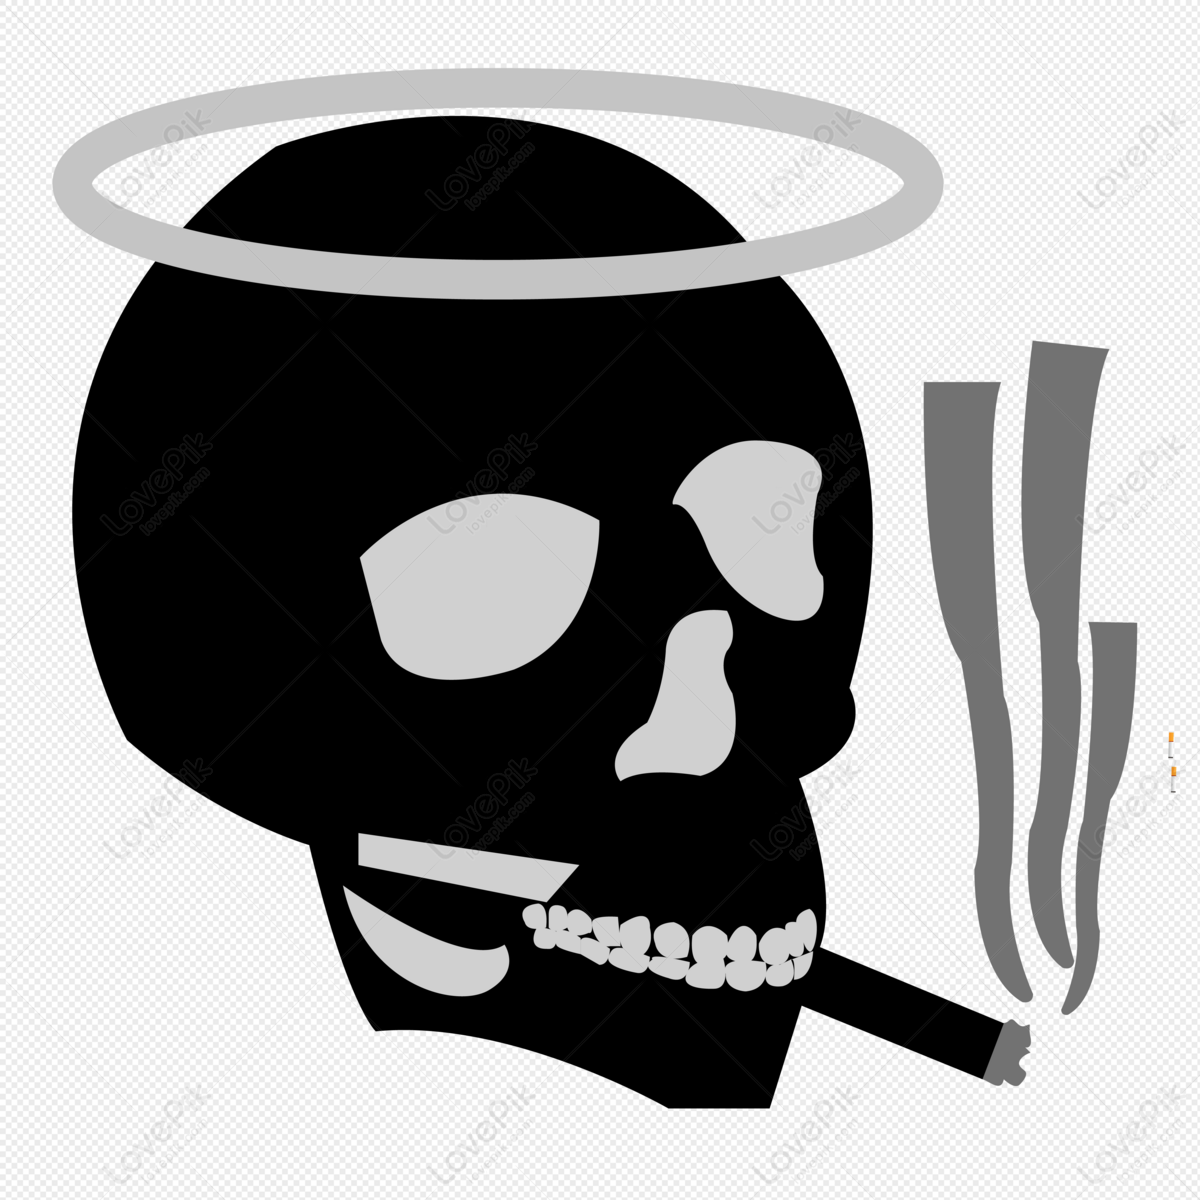 骷髅和交叉骨 头 涂鸦 吸烟 雪茄 礼物 致命 生病 不良图片下载 - 觅知网